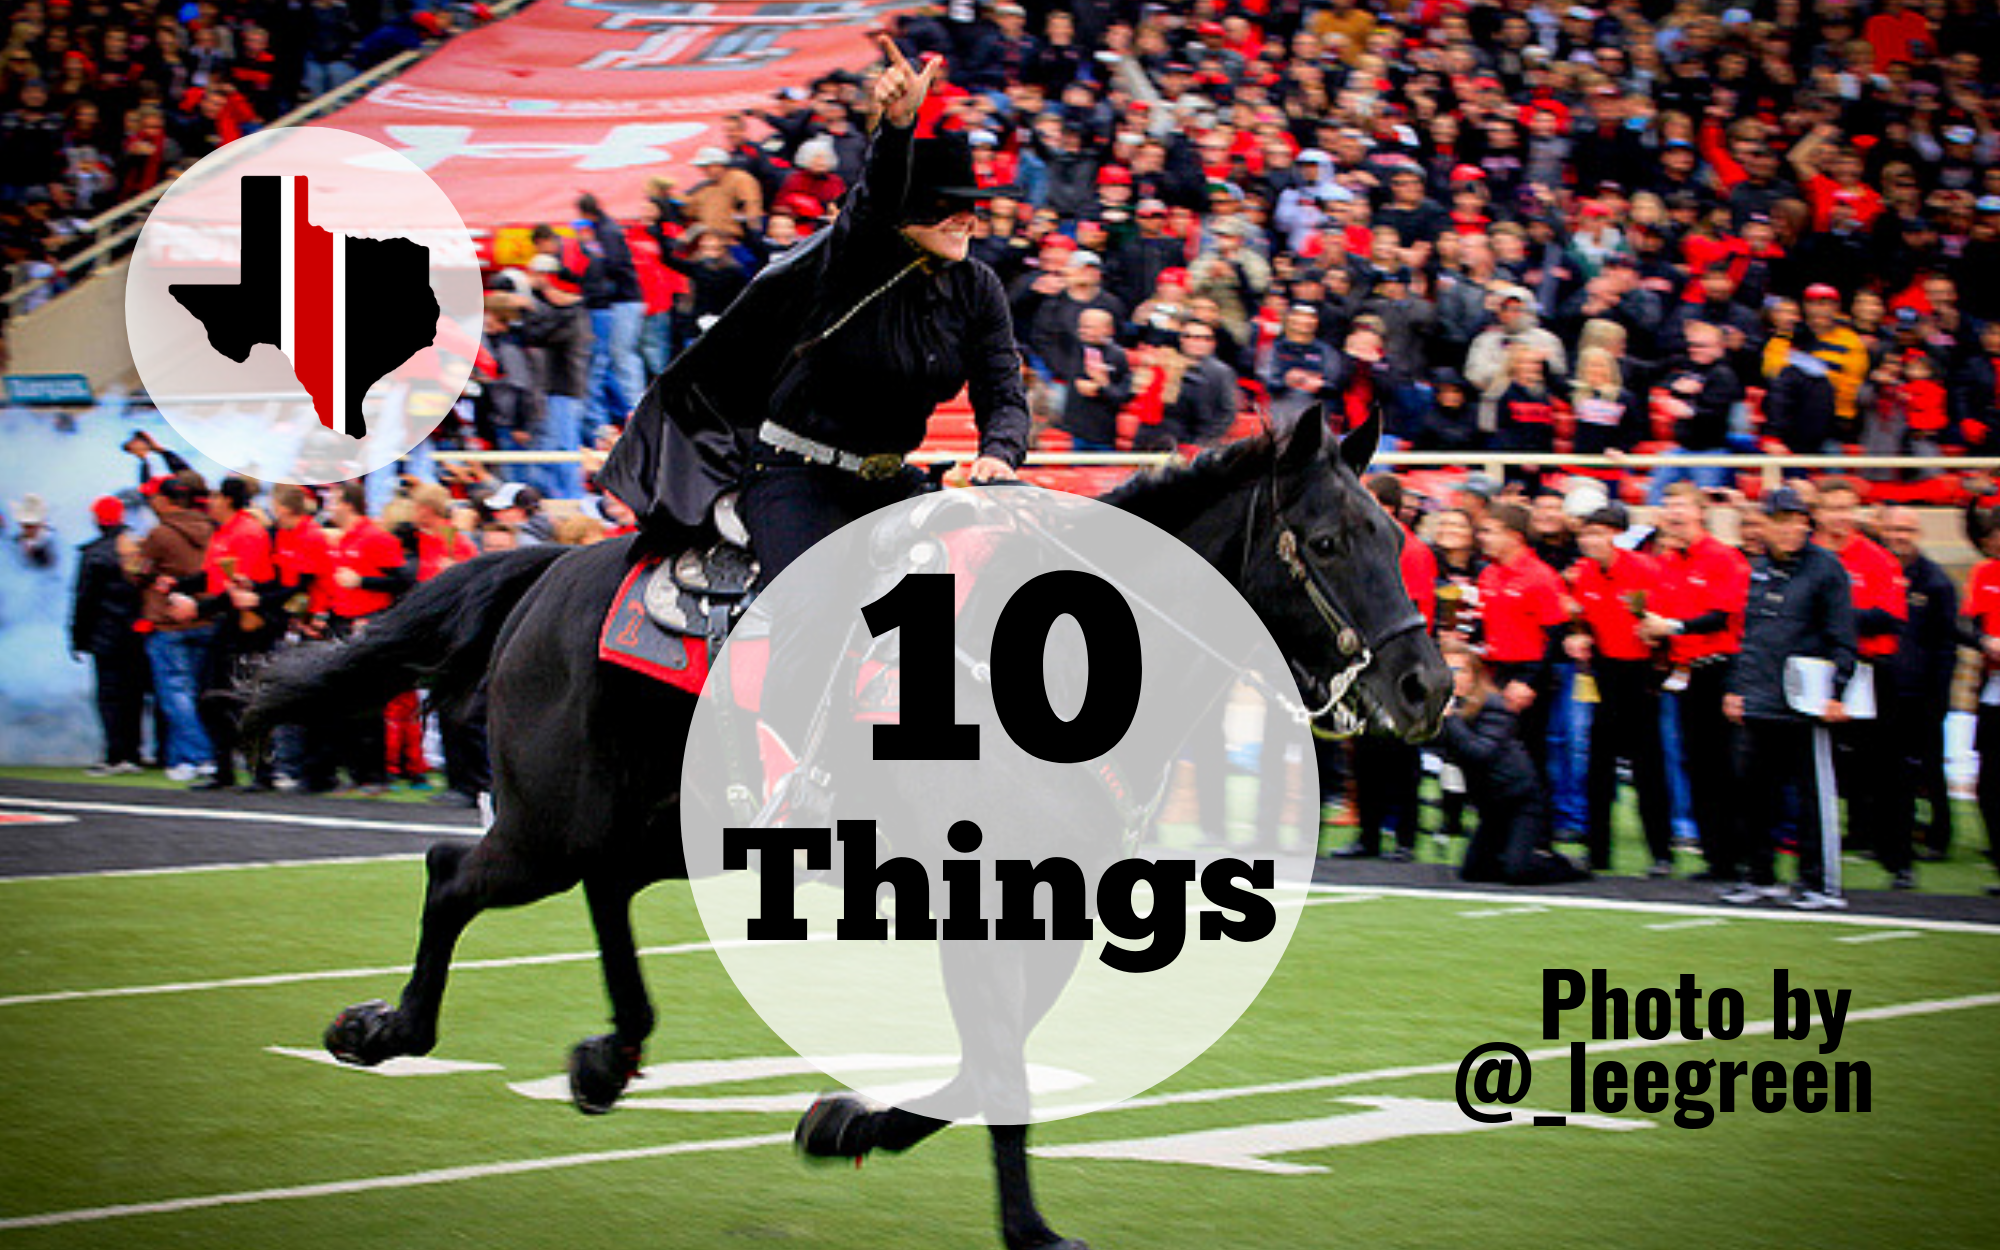 Ten Things: Texas Tech 38, UTEP 3